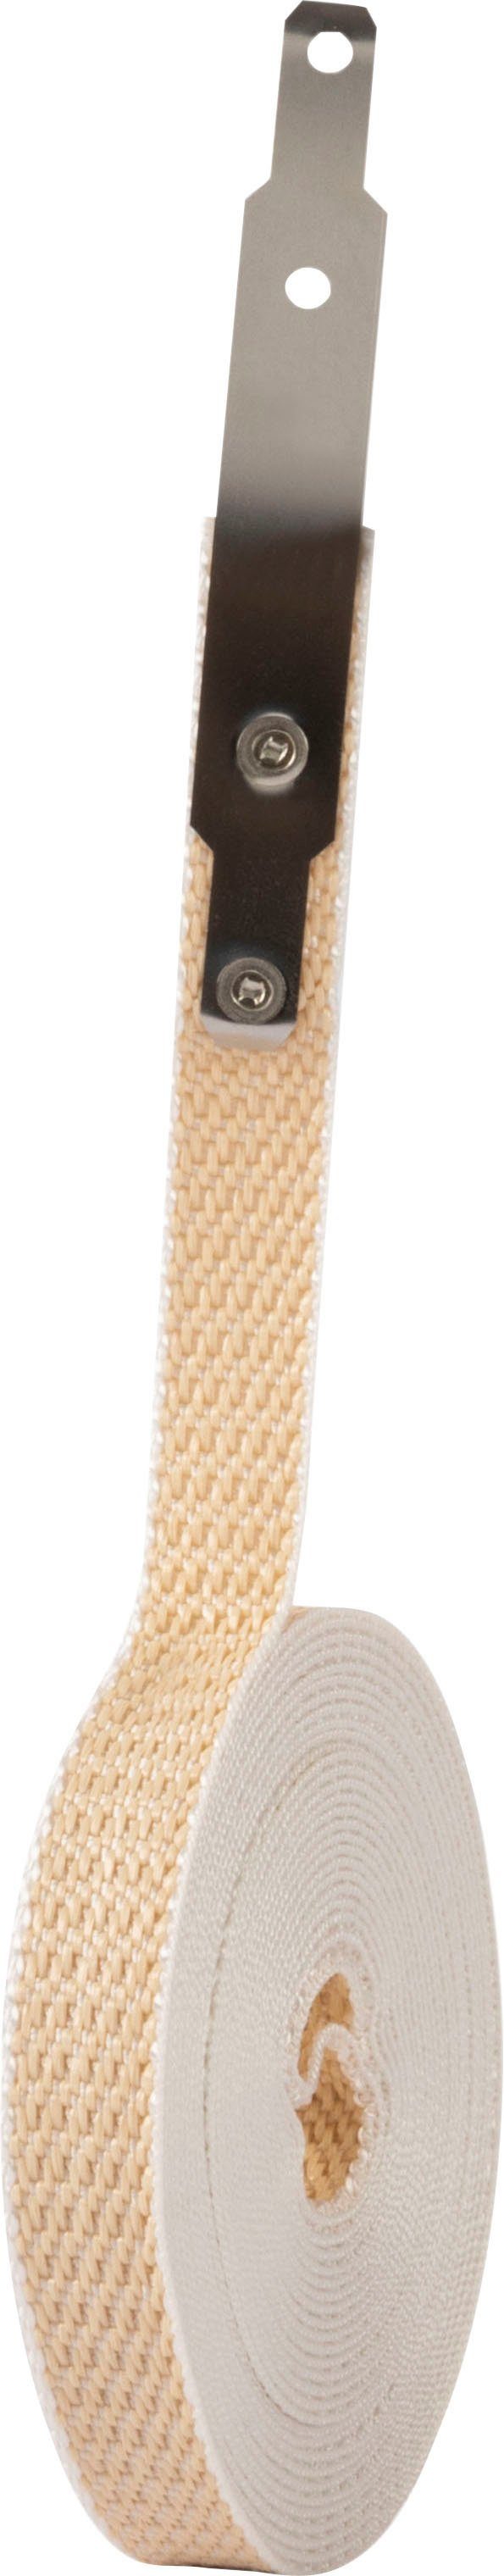 SCHELLENBERG Reparatur-Set GURTFIX Mini, 1-St., für alte oder verschlissene  Gurtbänder, 14 mm, beige